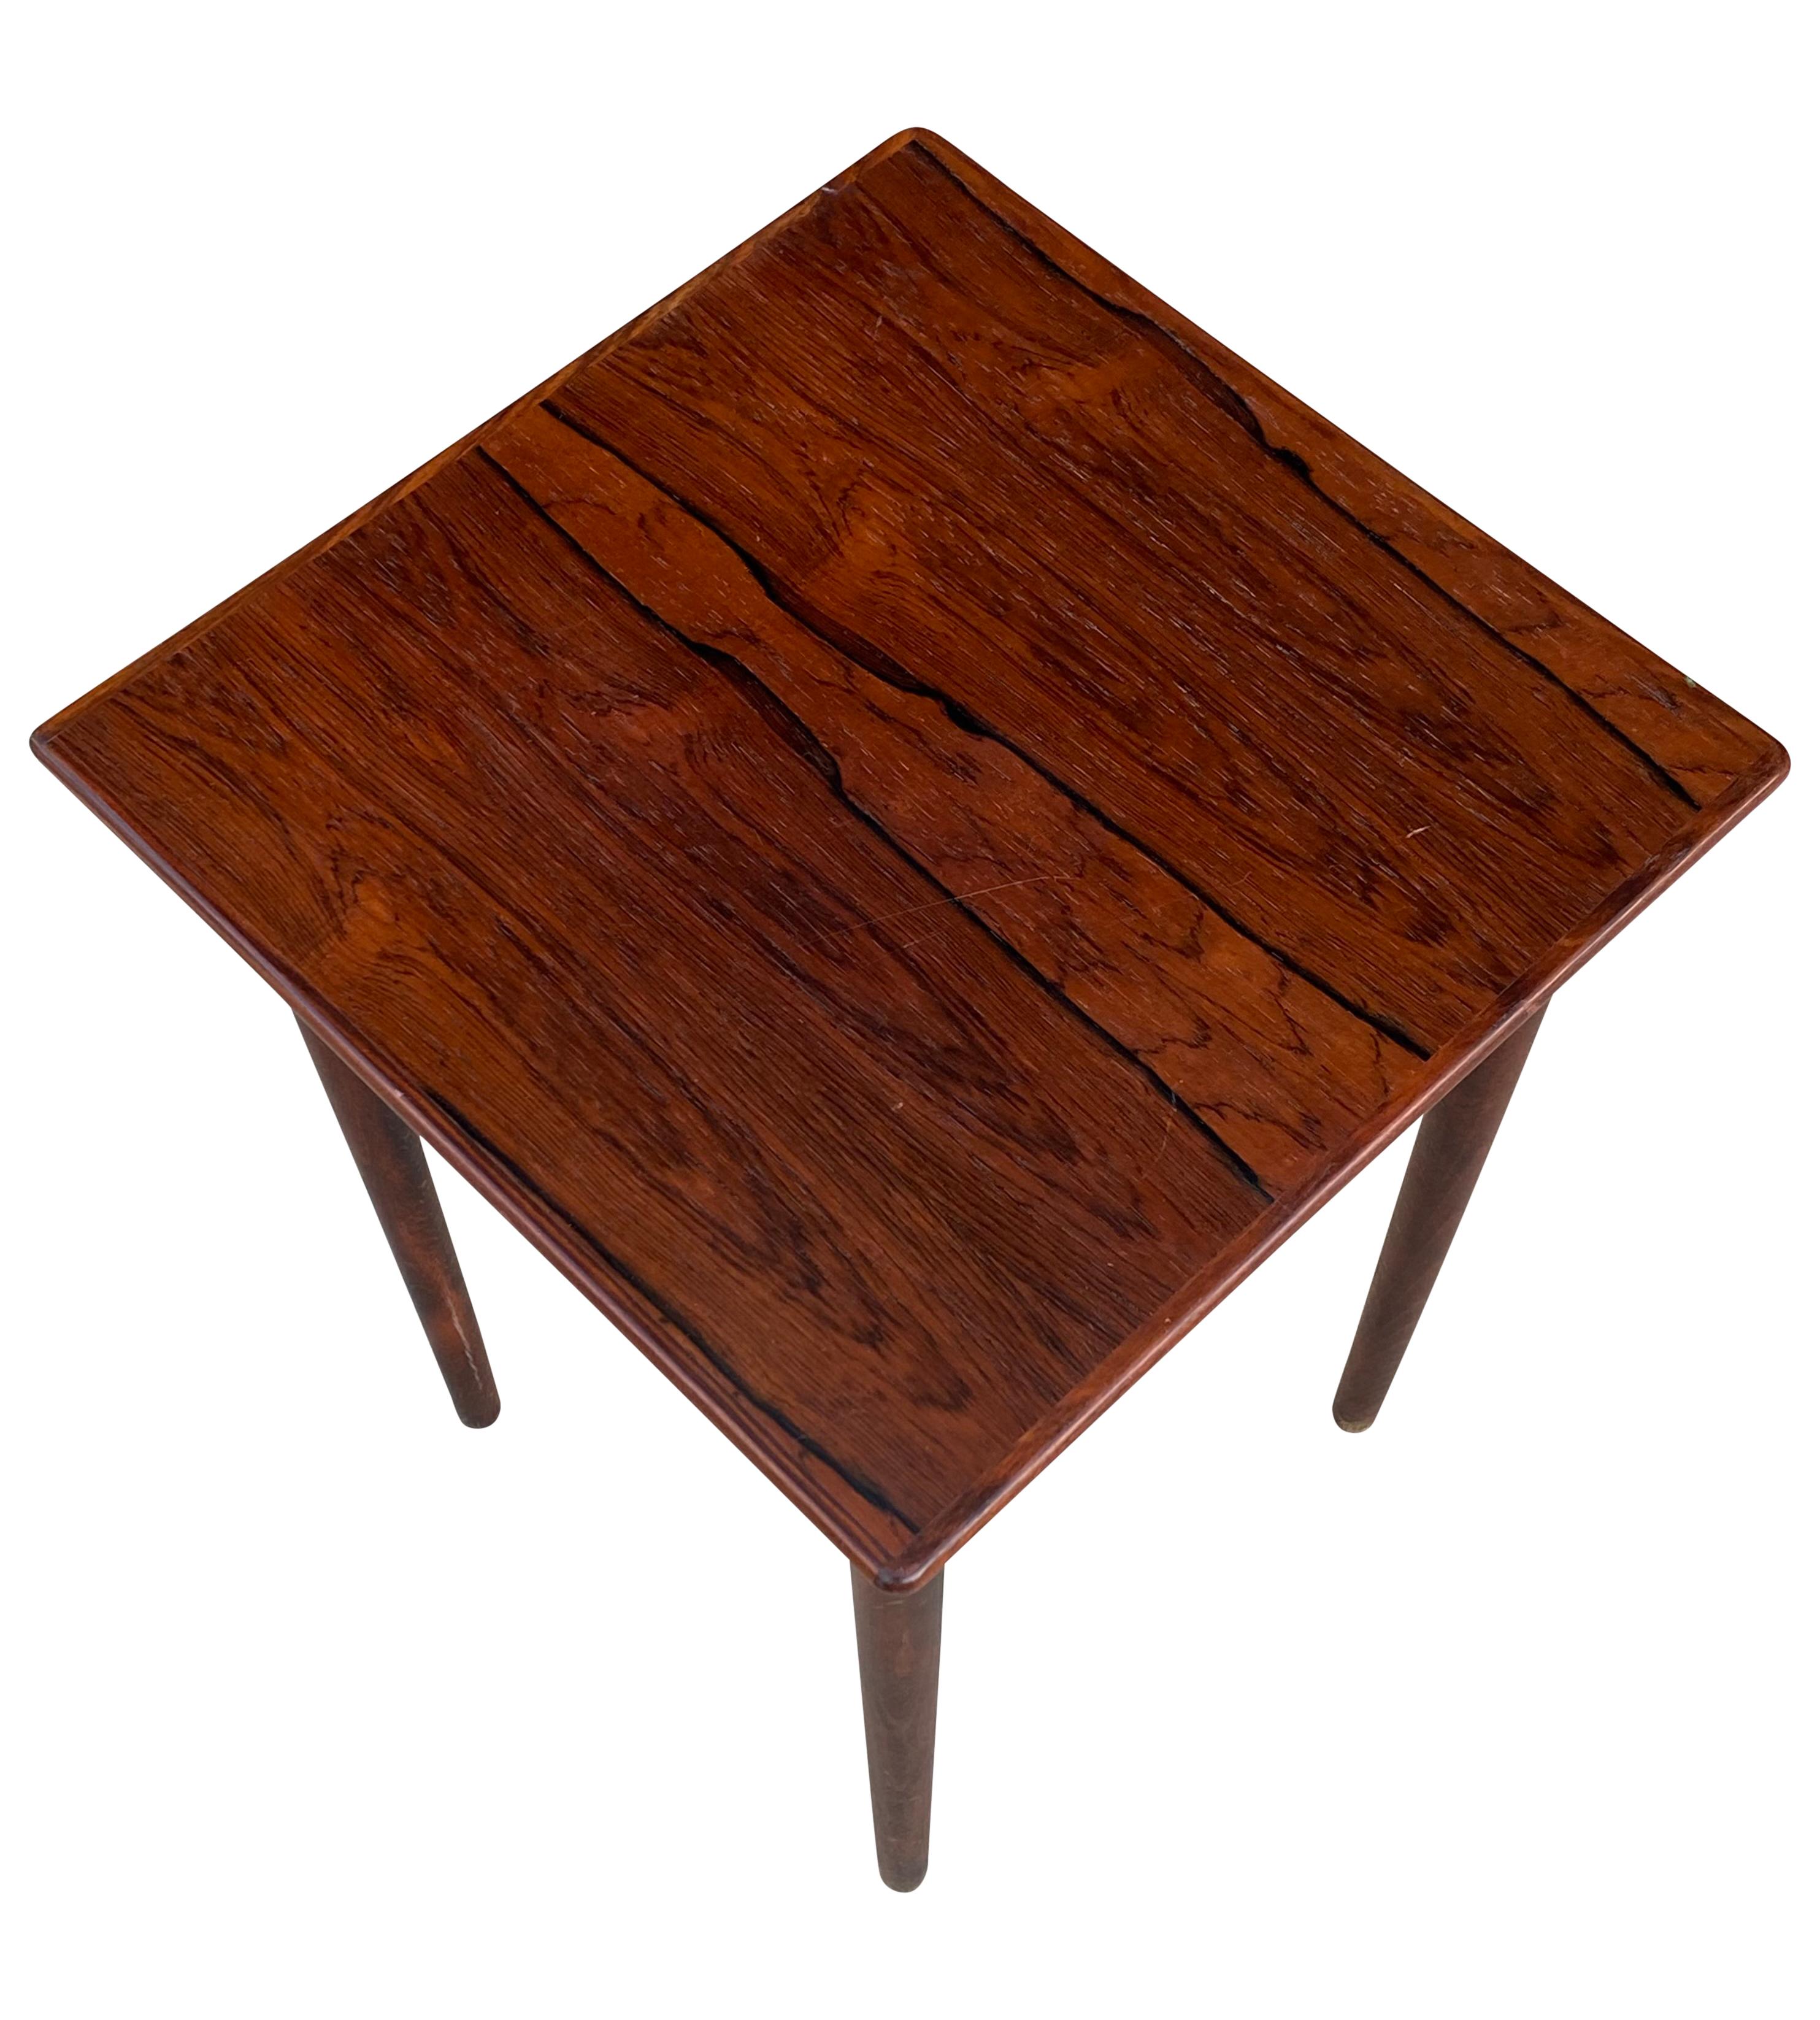 Wunderschöner und kompakter Beistelltisch aus Norwegen, ca. 1960er Jahre. Ausgeführt in wunderschönem brasilianischem Palisanderholz mit brillanter Farbe und elegantem Maserungsbild. Ein perfekter Tisch für einen Sessel oder ein Sofa. Minimale